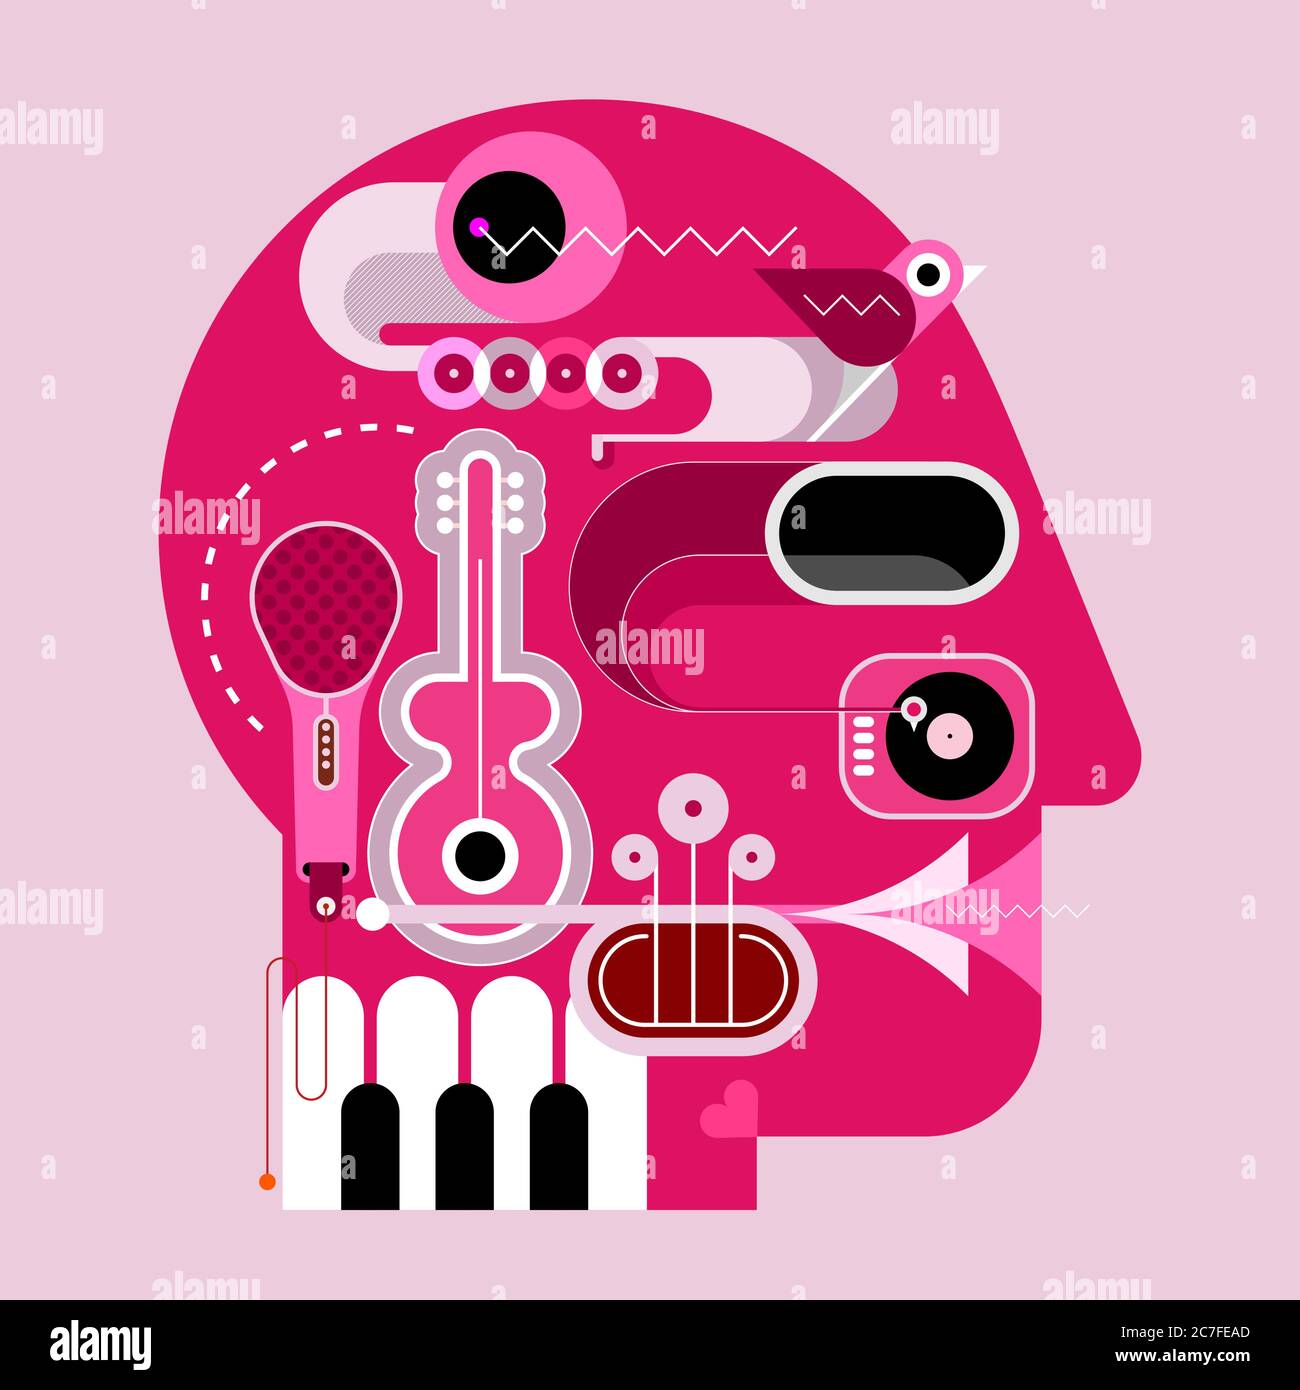 Hunan Kopf Form Design bestehend aus einer verschiedenen Musikinstrumente Vektor-Illustration. Stock Vektor